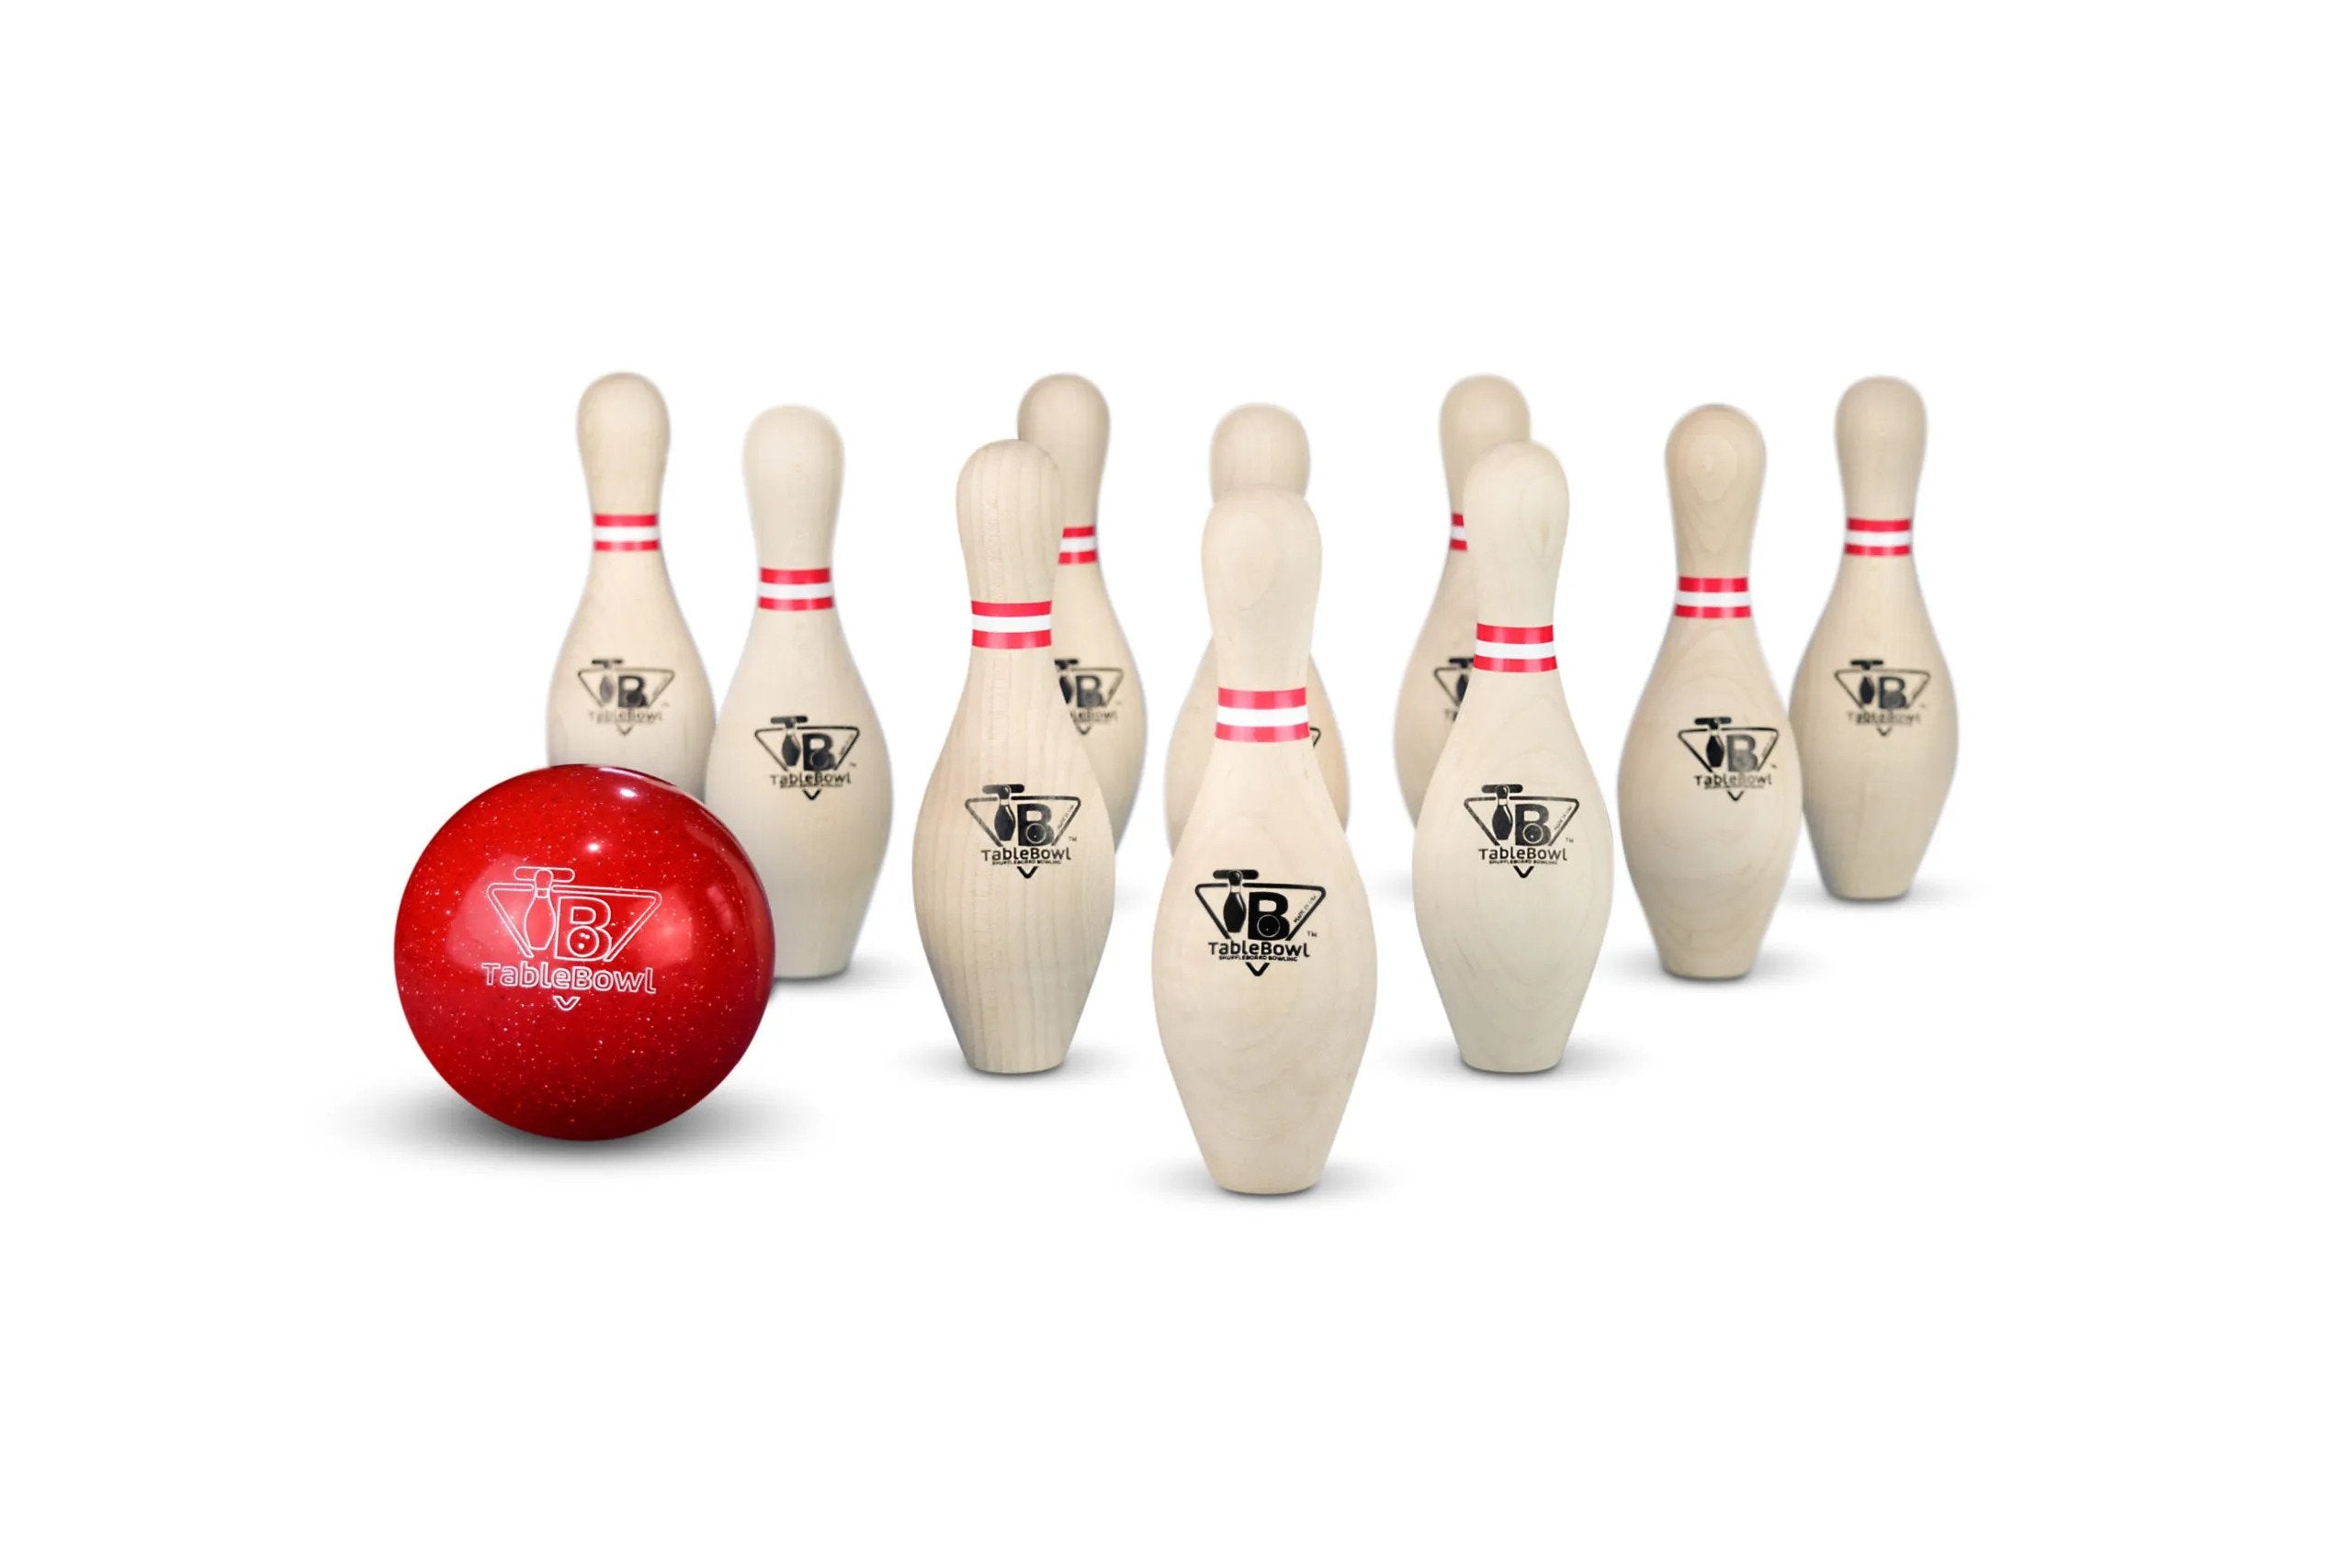 TableBowl – Premium Large Shuffleboard Bowling Set